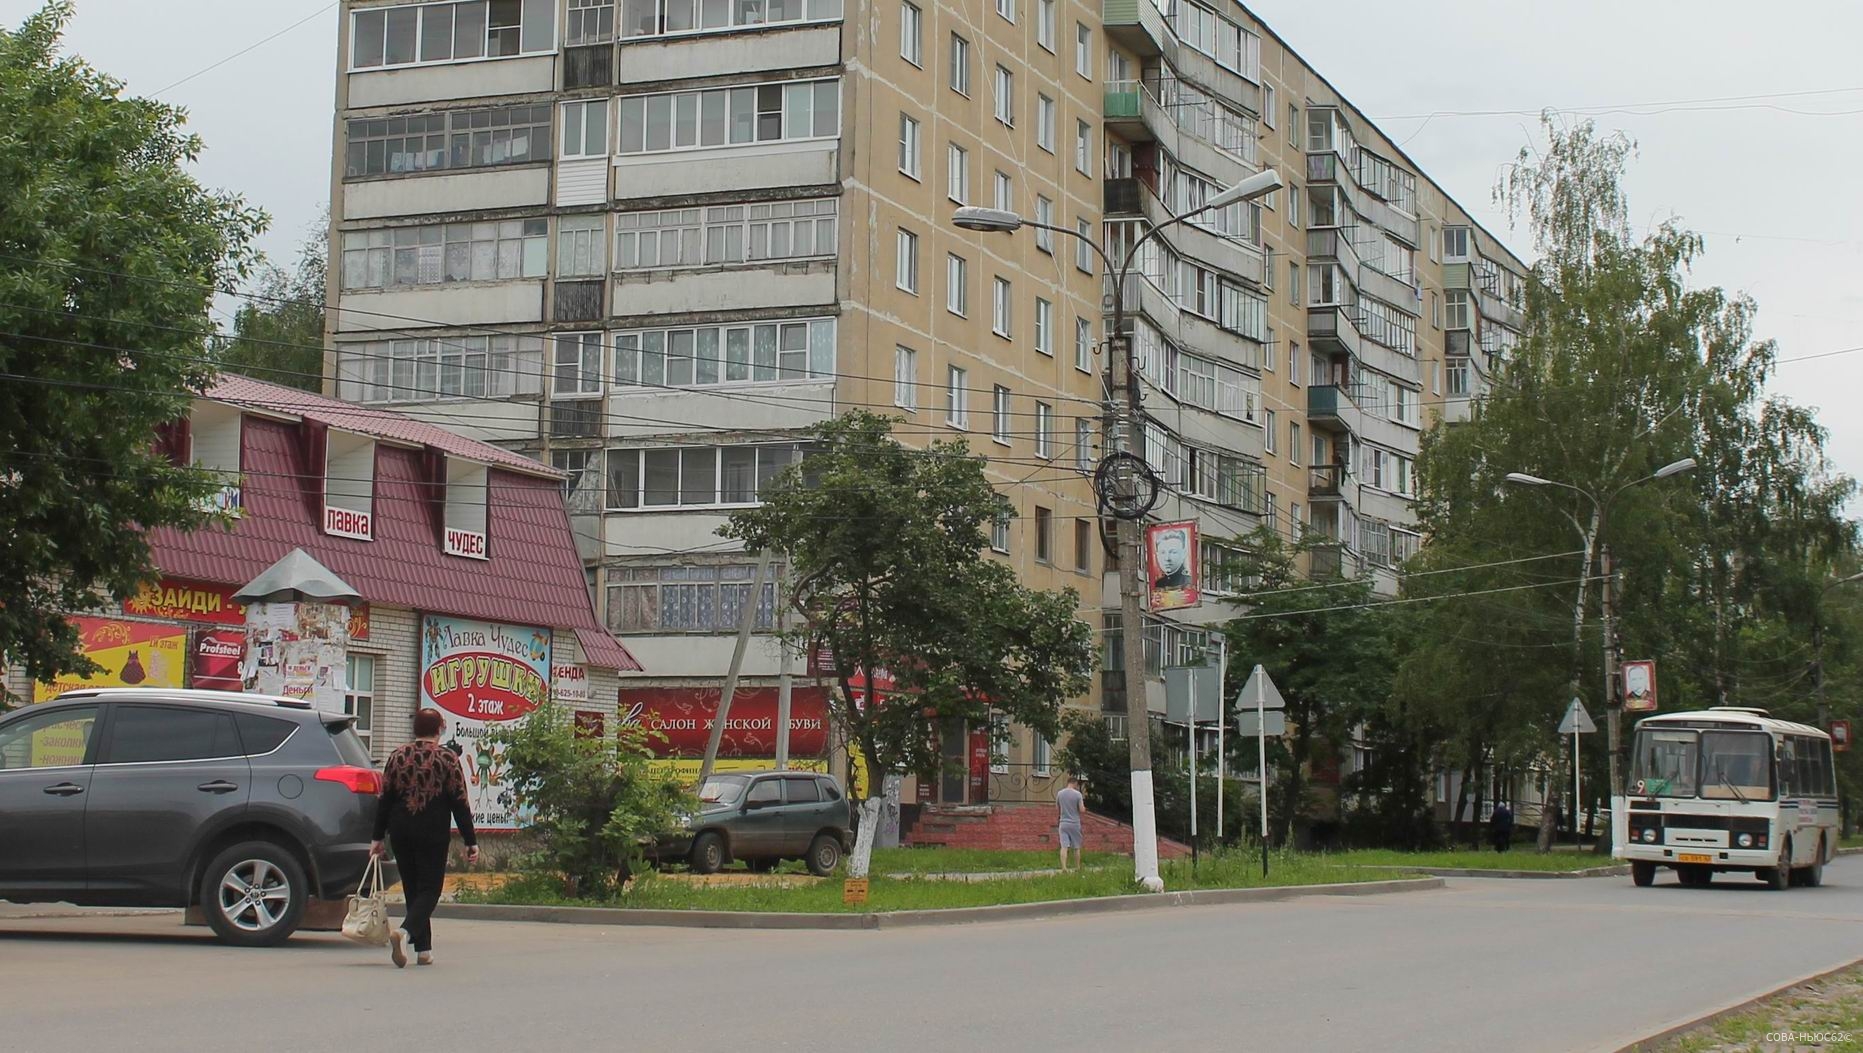 Предложение переименовать улицу Киевскую в Сасове исчезло из паблика